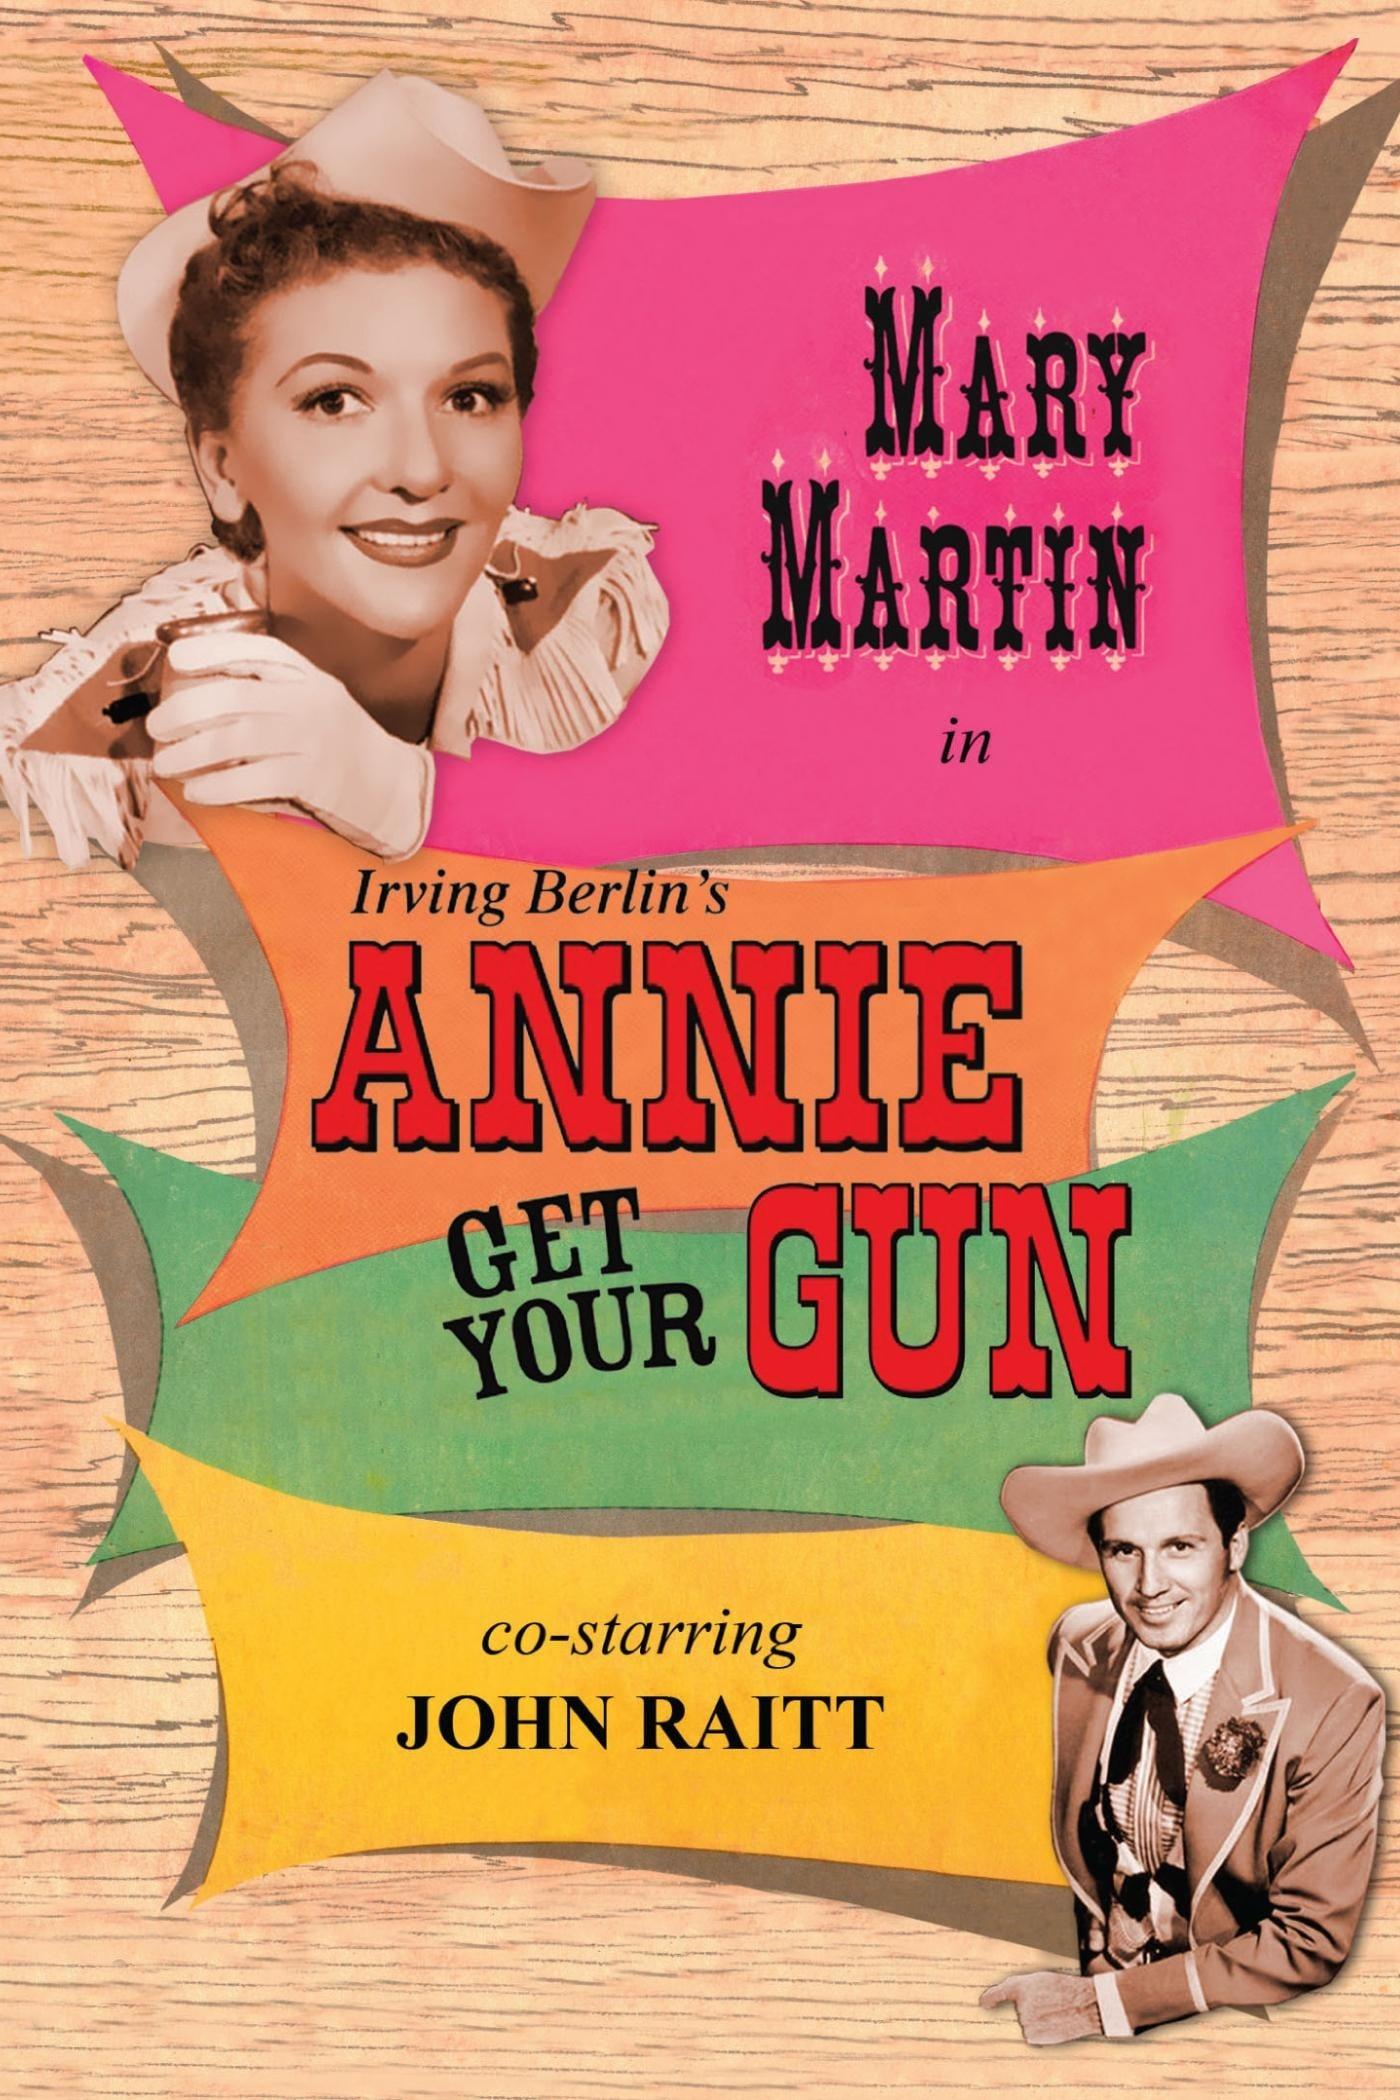 Annie Get Your Gun poster